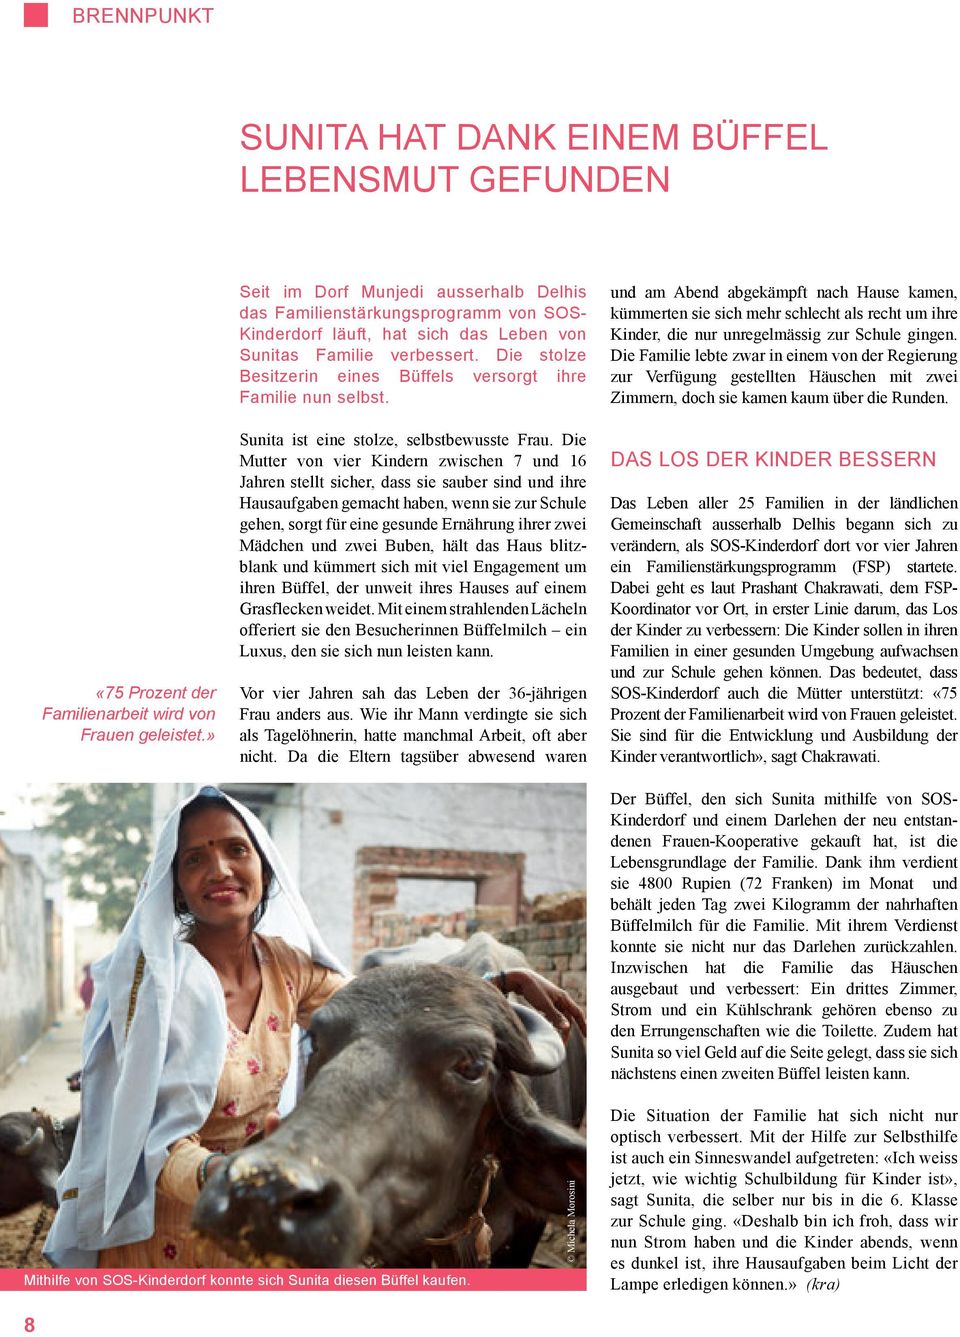 Die stolze Besitzerin eines Büffels versorgt ihre Familie nun selbst. Sunita ist eine stolze, selbstbewusste Frau.